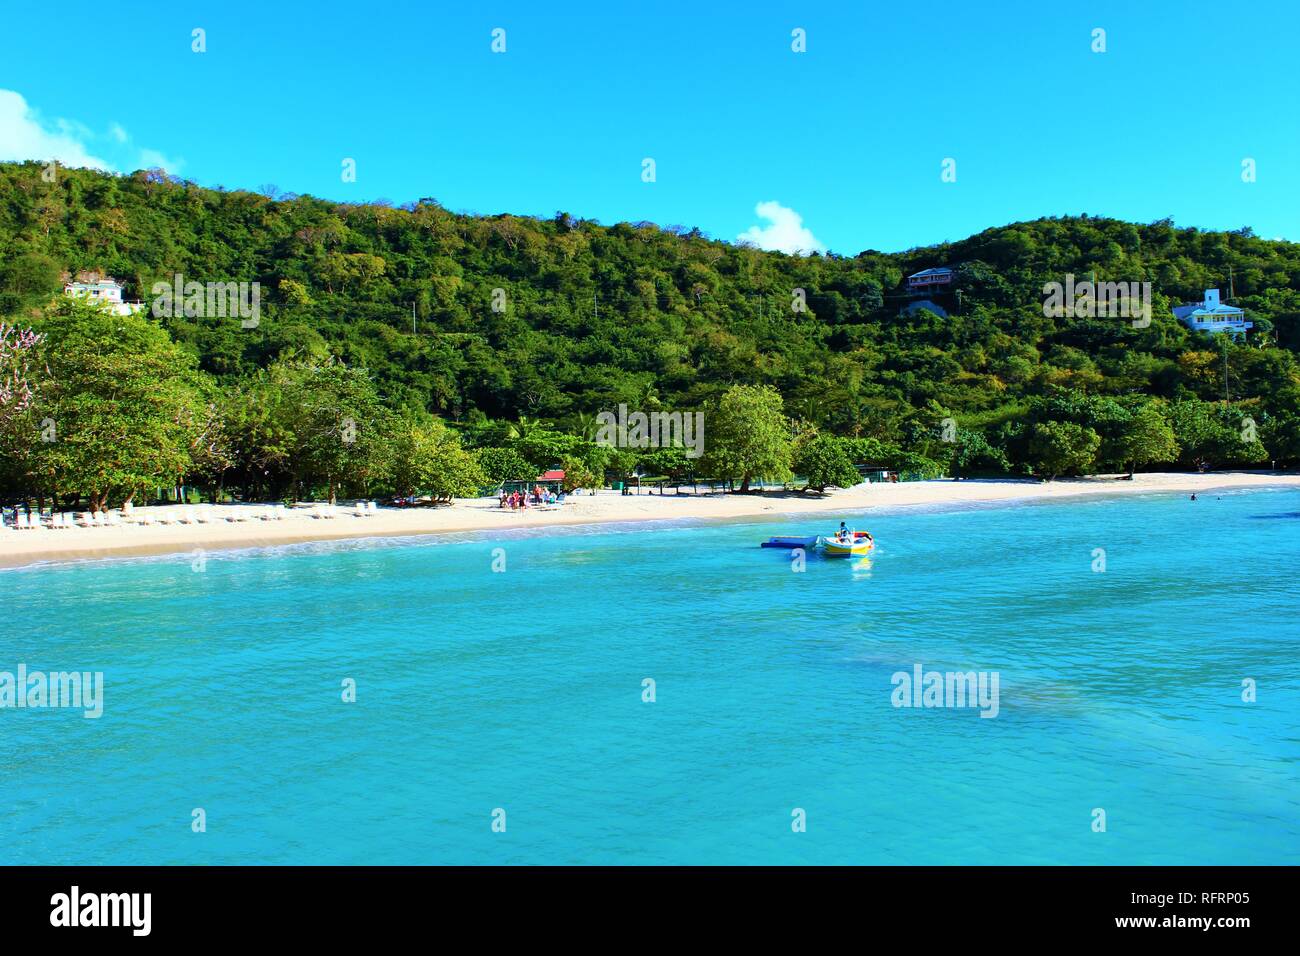 Grenada, Karibik - 23. Februar 2018: Blick vom Meer der wunderschönen weißen Sandstrand und dem türkisfarbenen Wasser des Grenada Morne Rouge Strand. Stockfoto